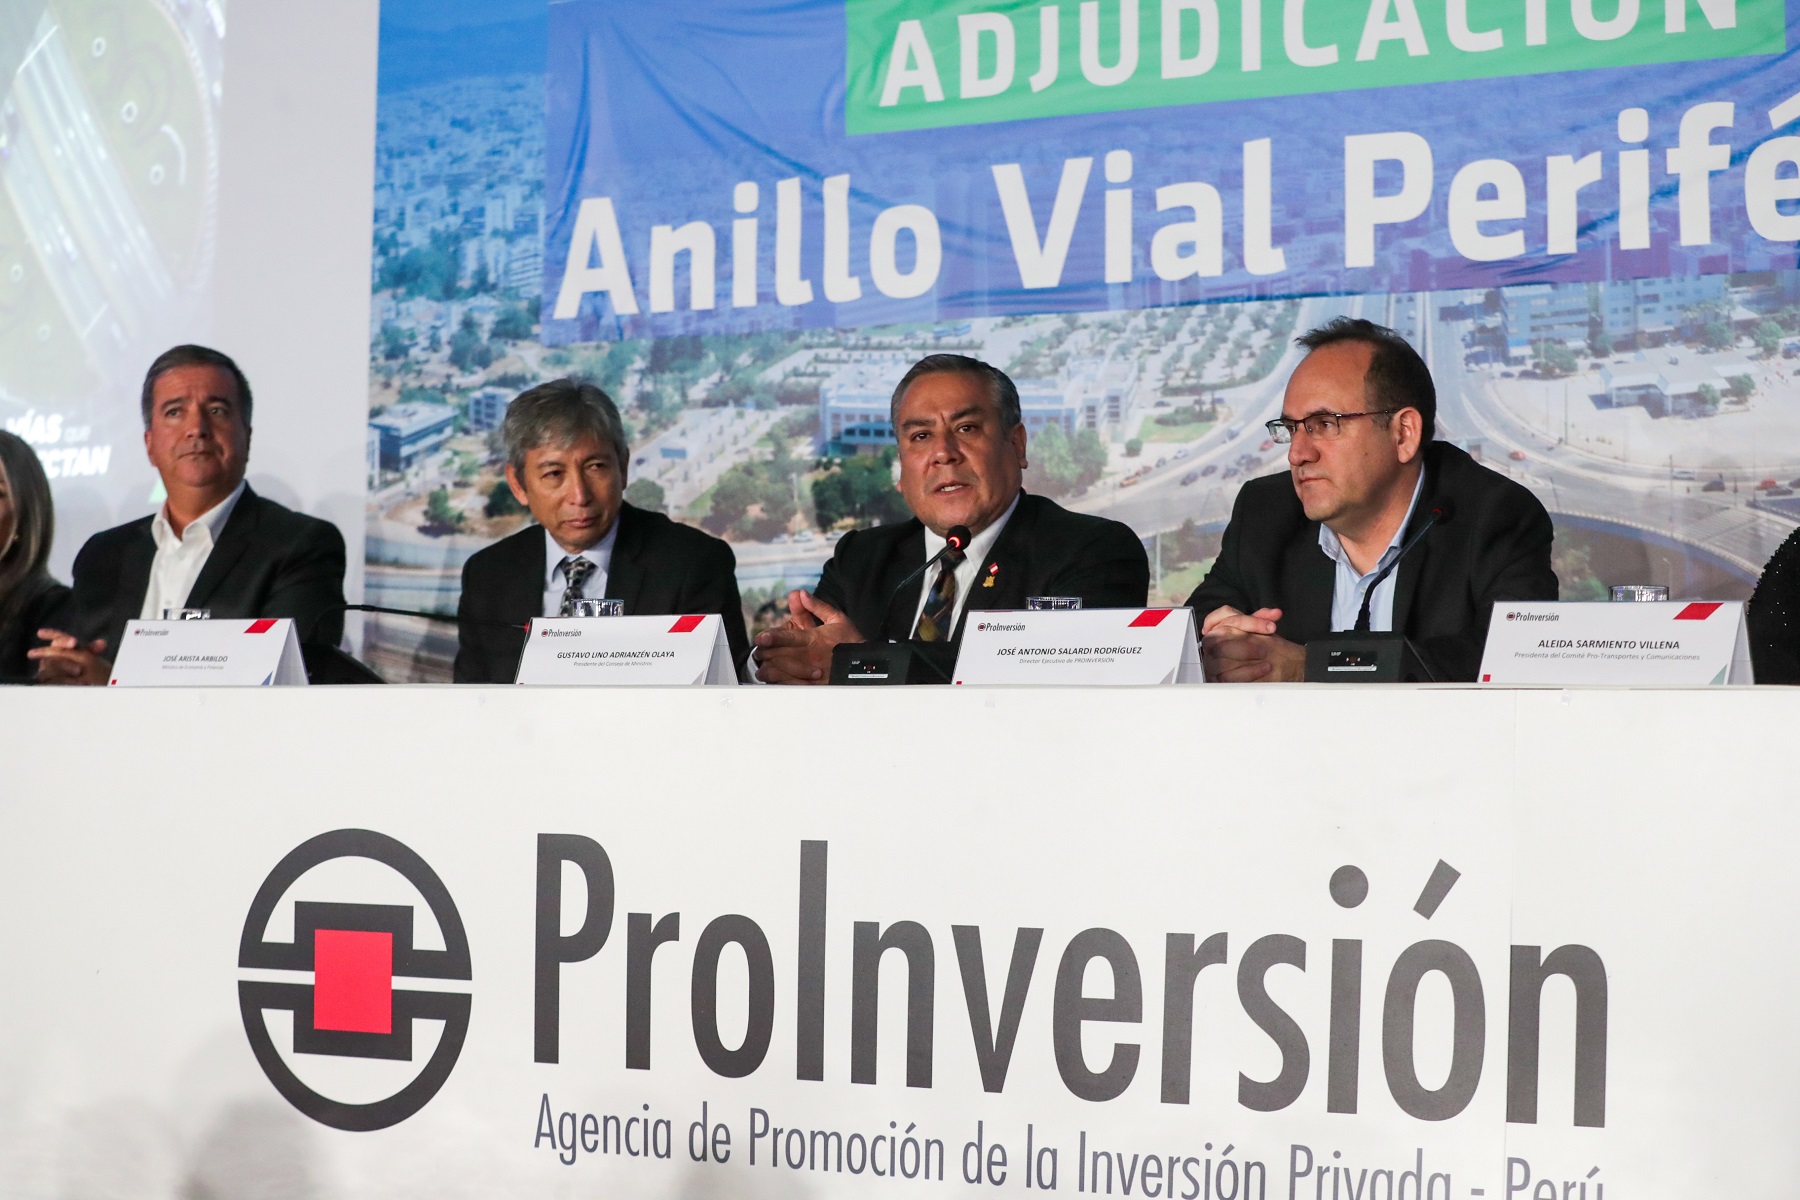 Gobierno adjudica proyecto Anillo Vial Periférico a consorcio español por 3400 millones de dólares, y ratifica compromiso del Perú con inversiones.